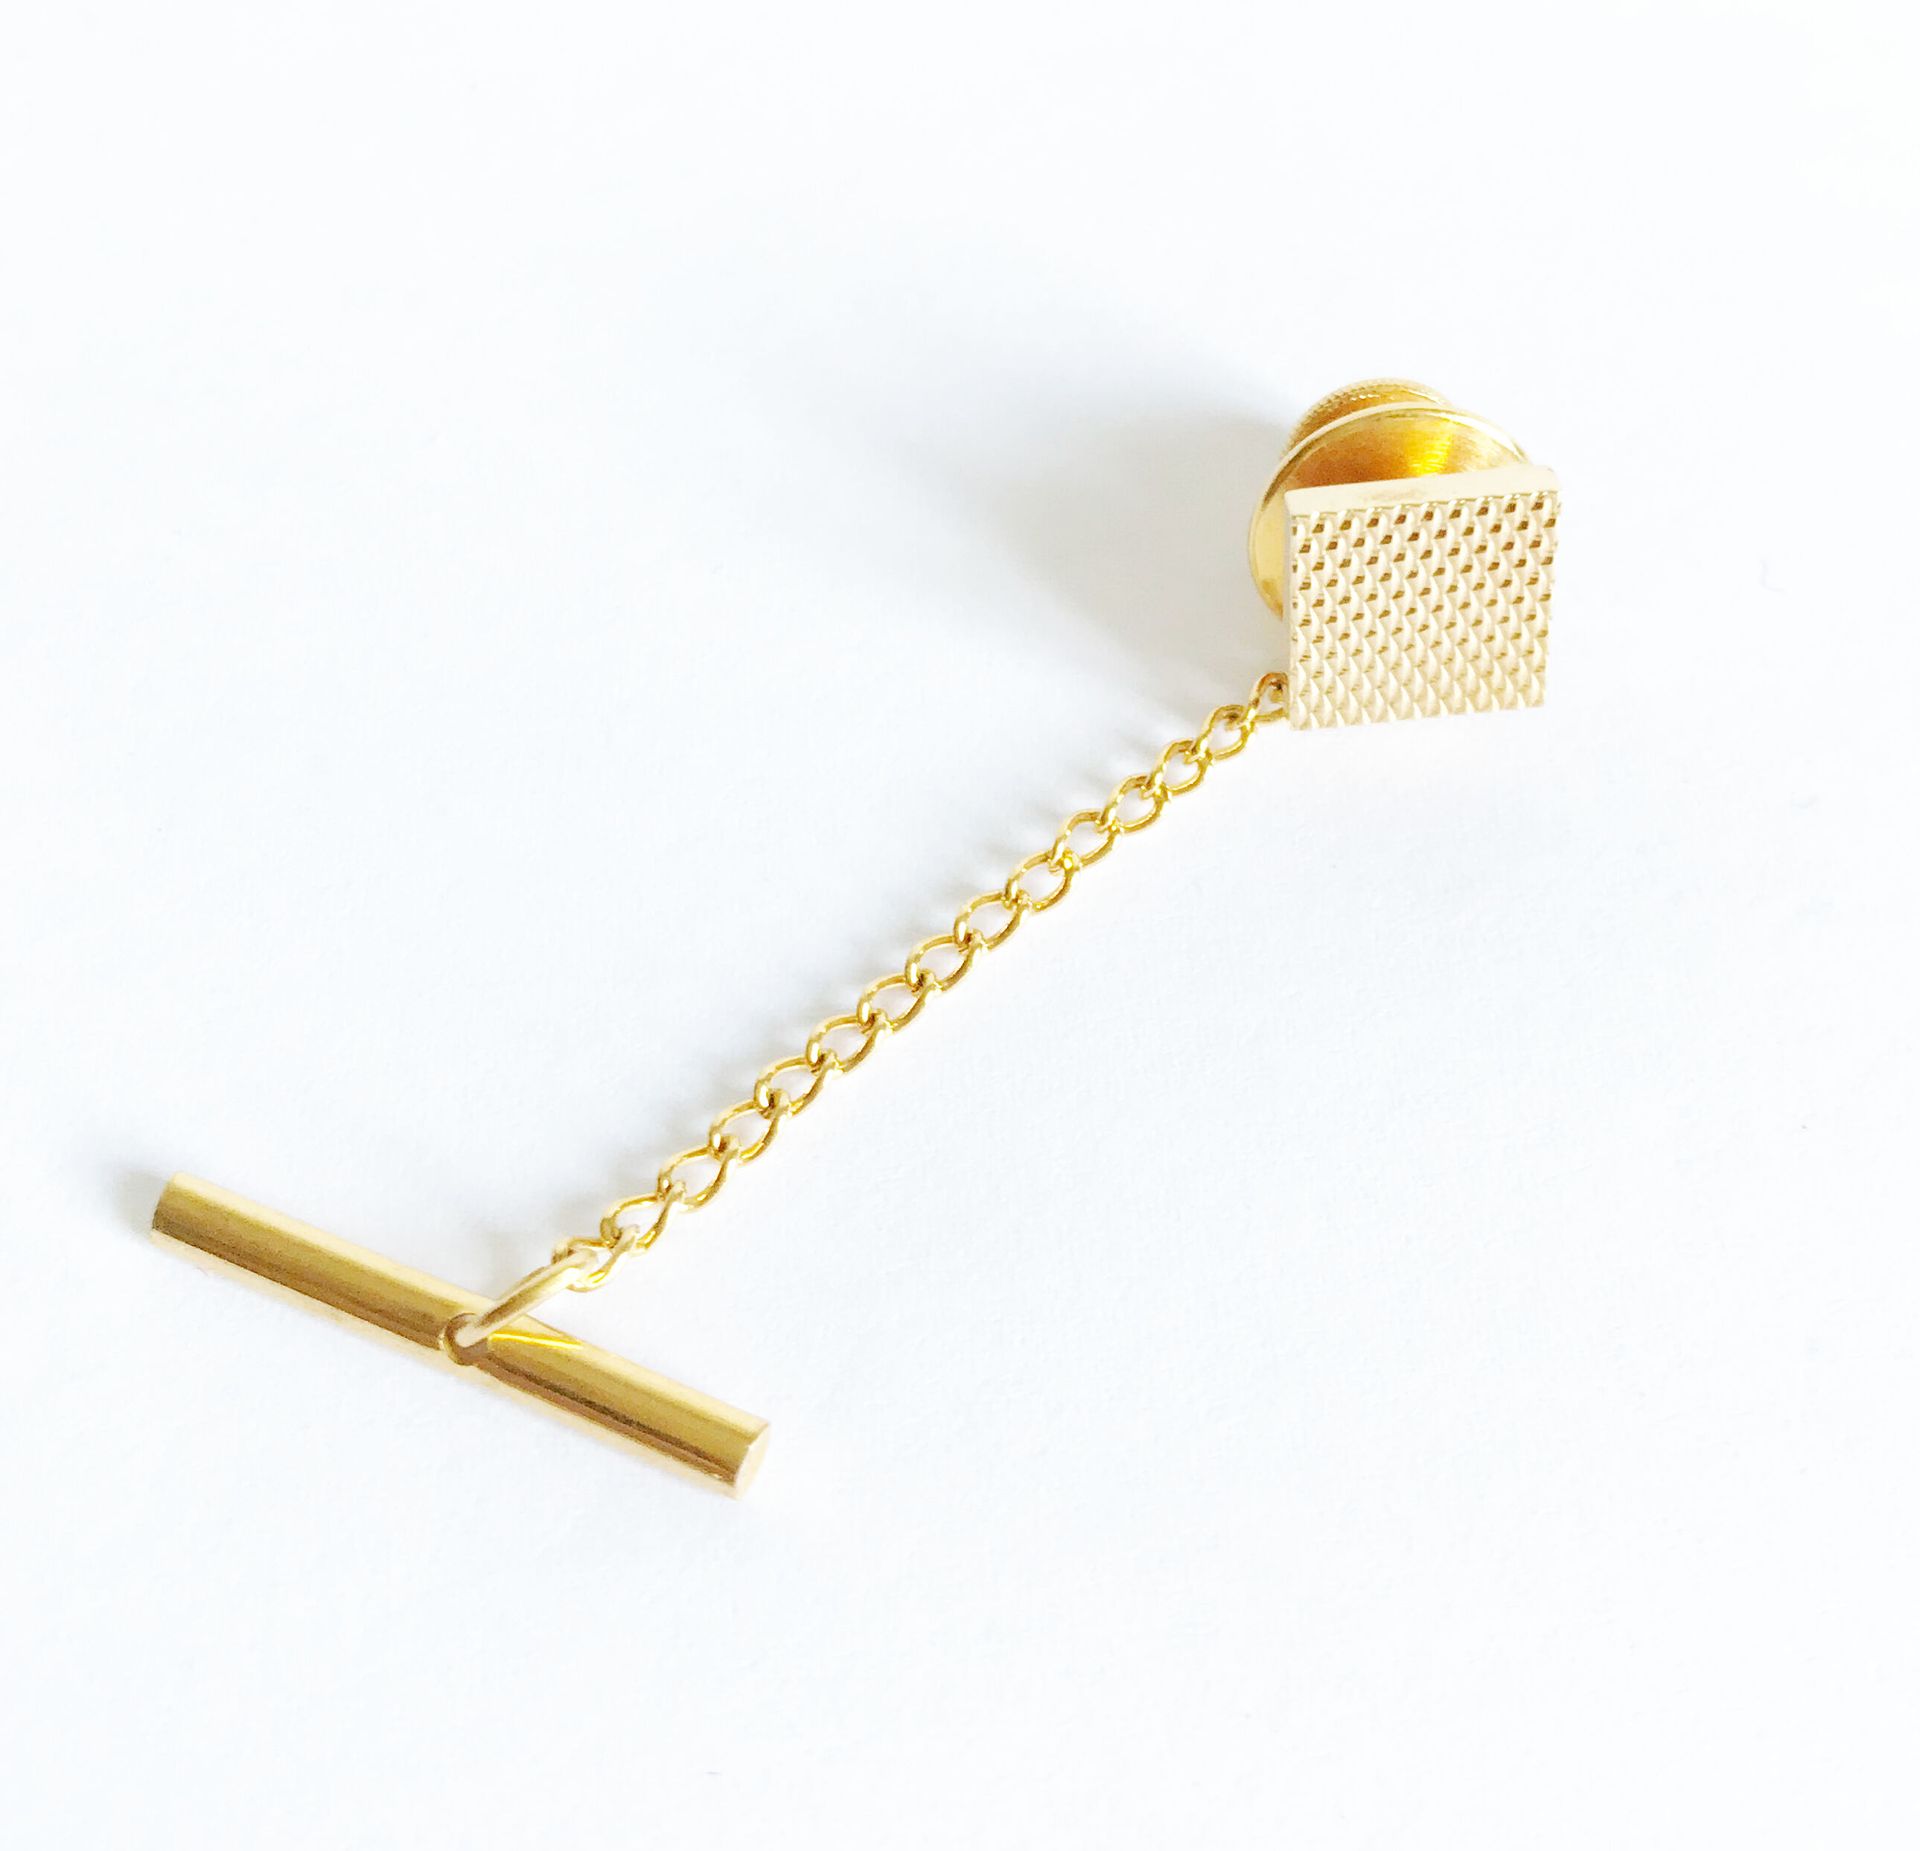 Null 方形项链纽扣，扭索纹黄金（18K/750th），带黄金金属扣和链条
纽扣重量：1,39克